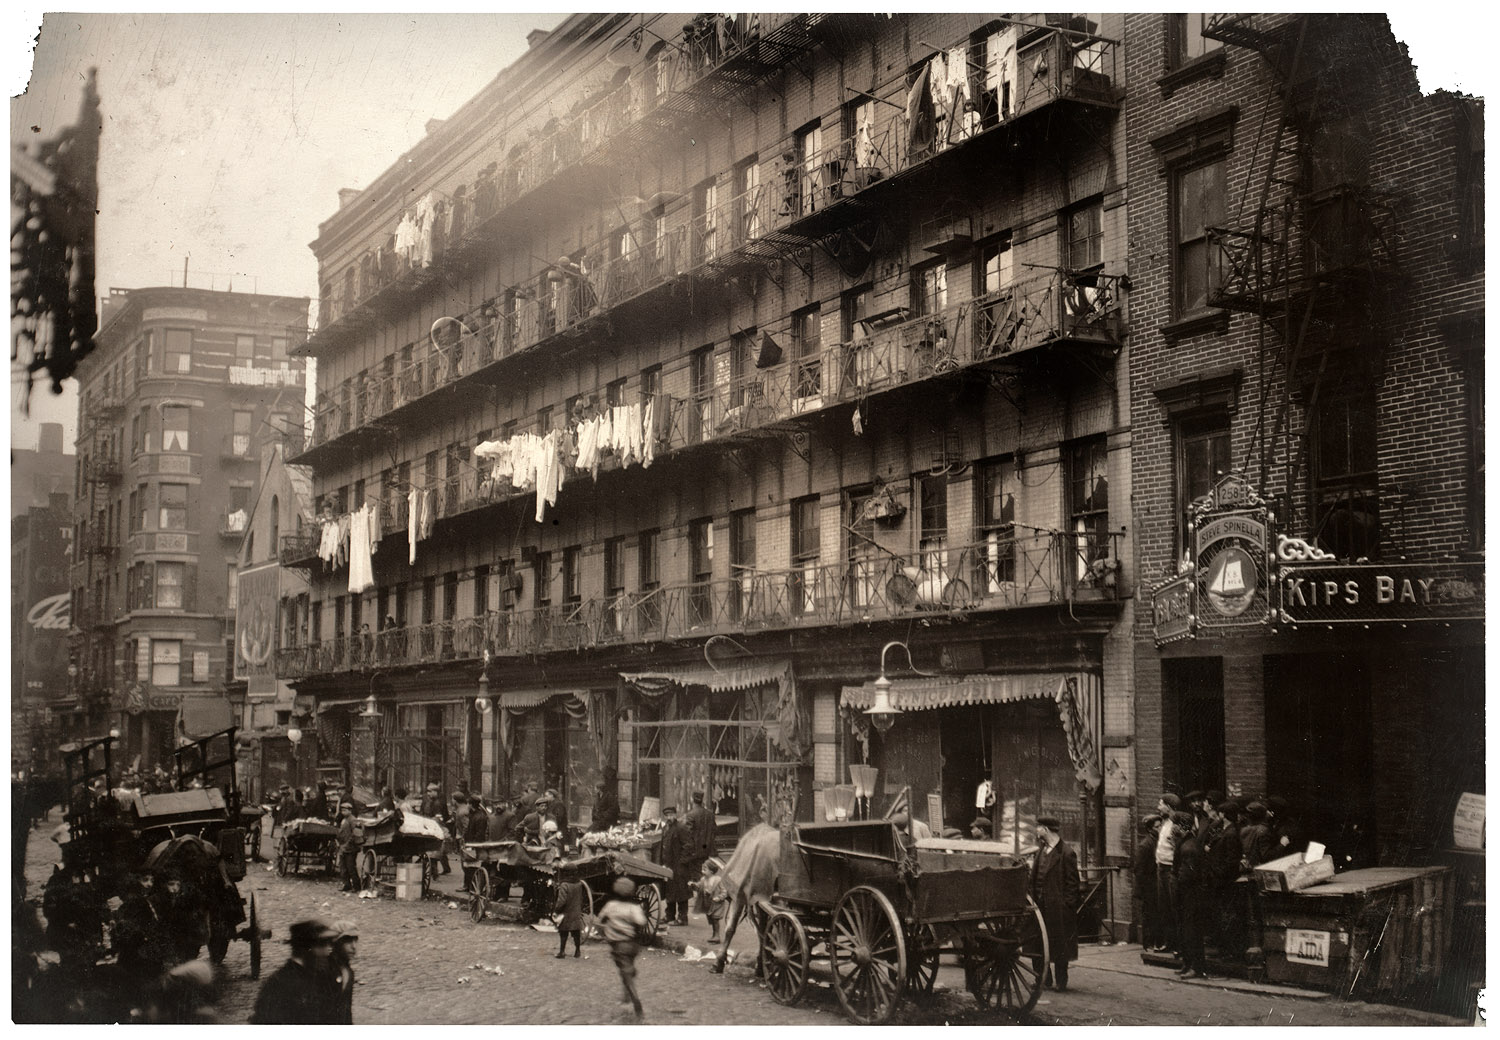 Elizabeth Street near Houston Street 1912 (Cleaned up image courtesy Shorpy)